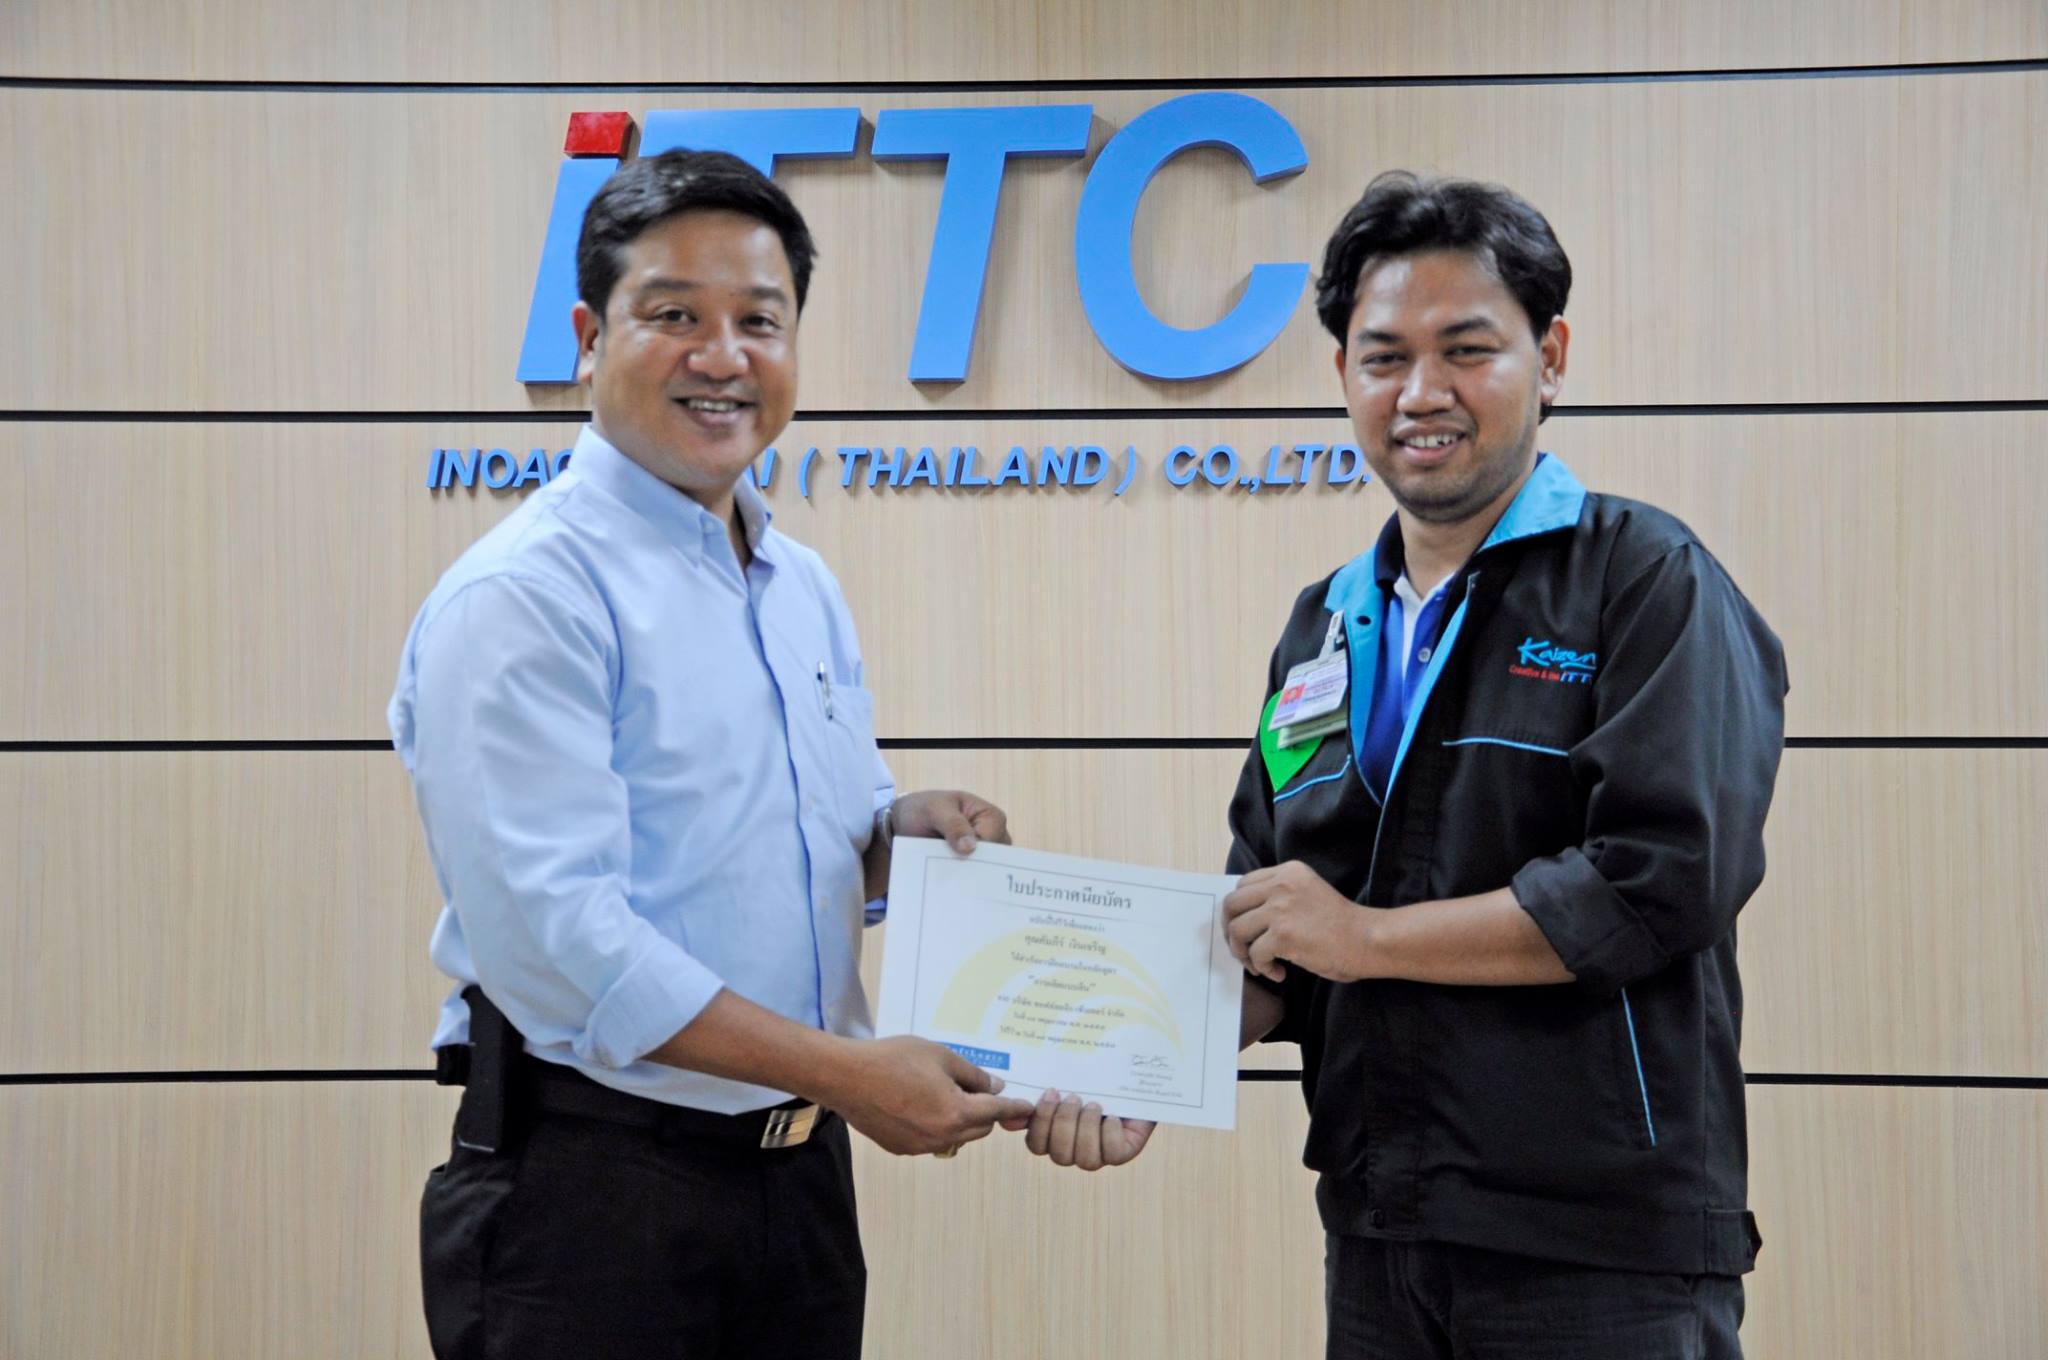 Inoac Tokai (Thailand) :  Lean Manufacturing